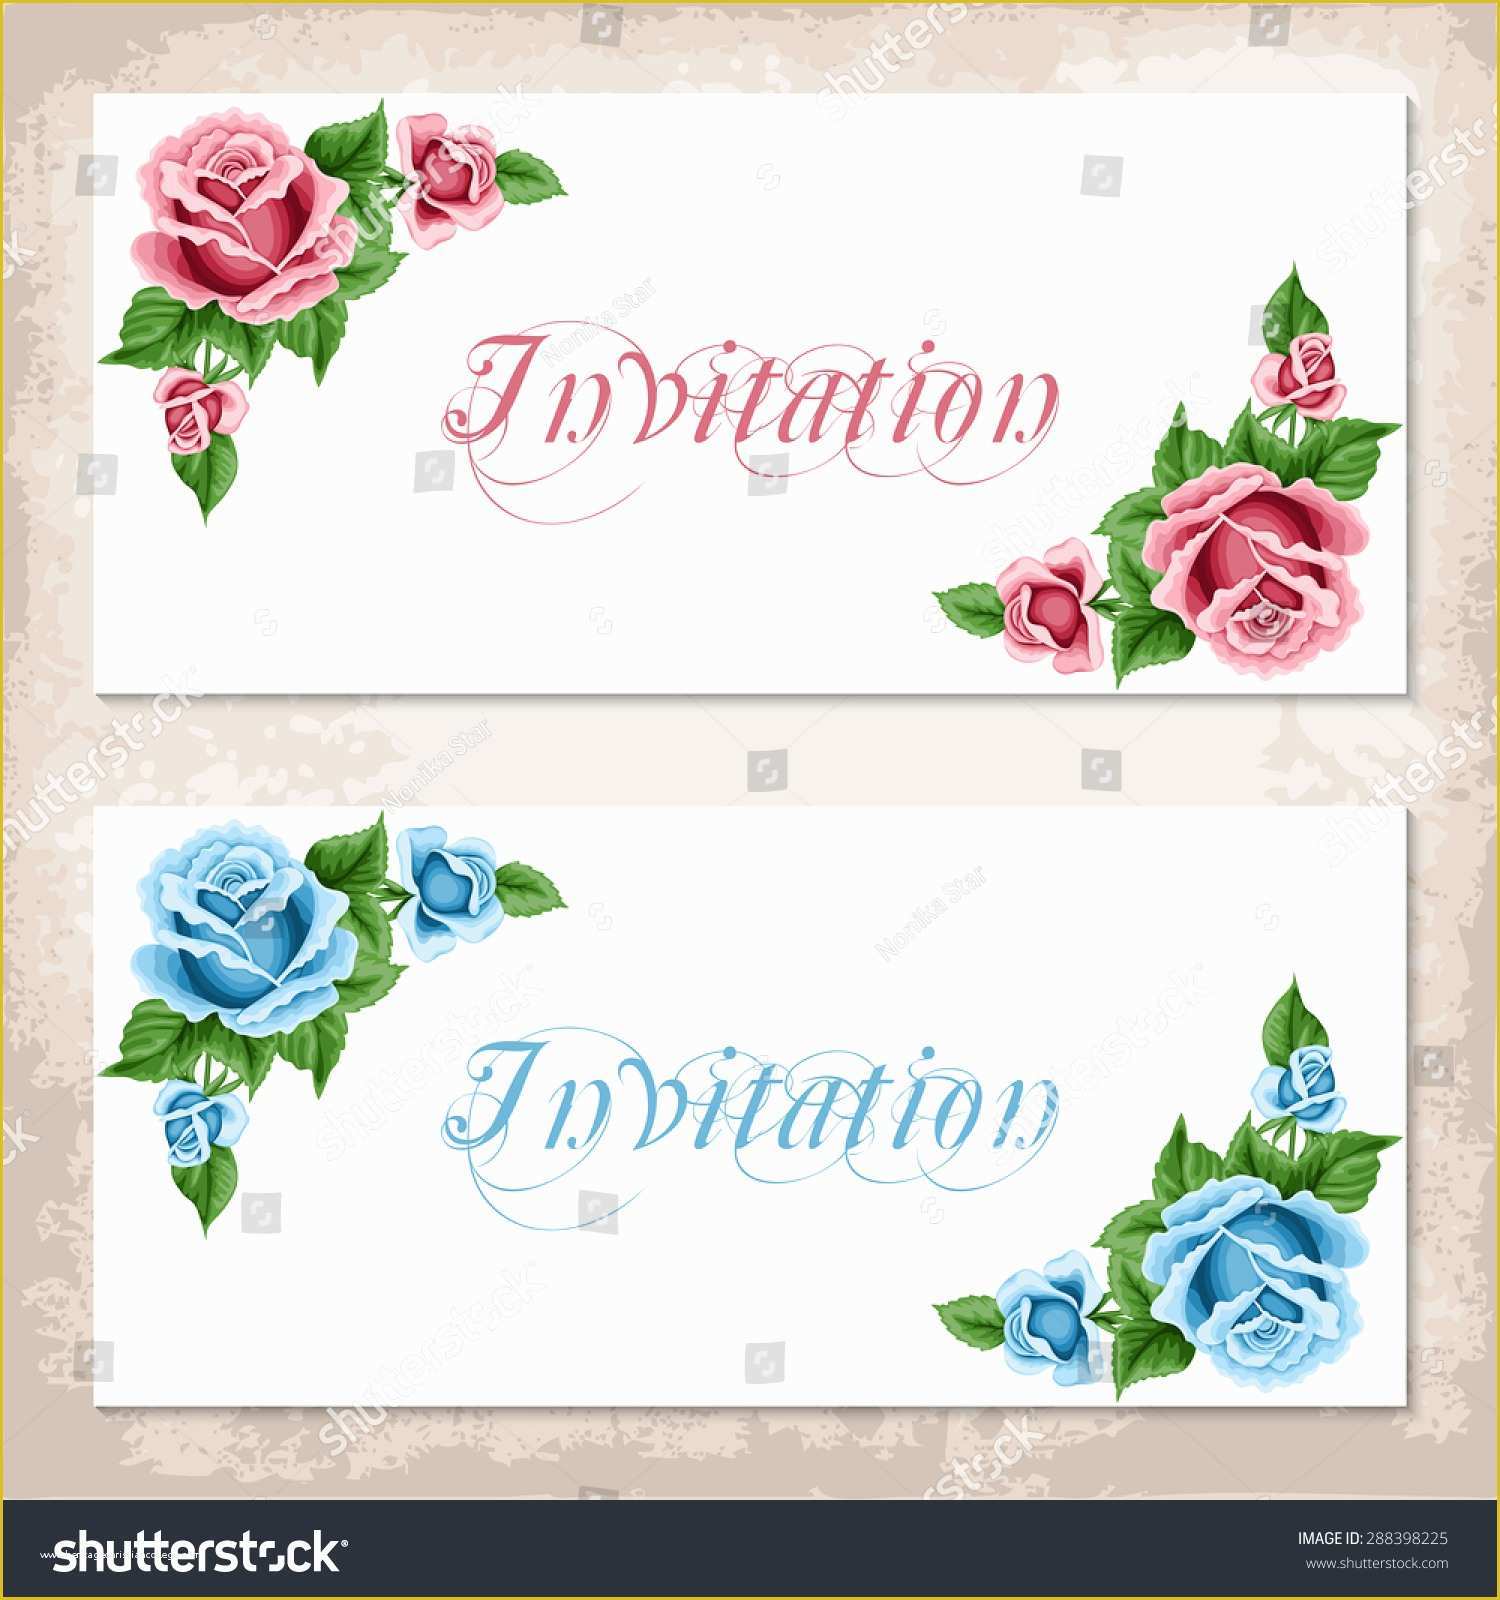 Shabby Chic Birthday Invitation Templates Free Of Vintage Invitation Template Roses Shabby Chic Stock Vector